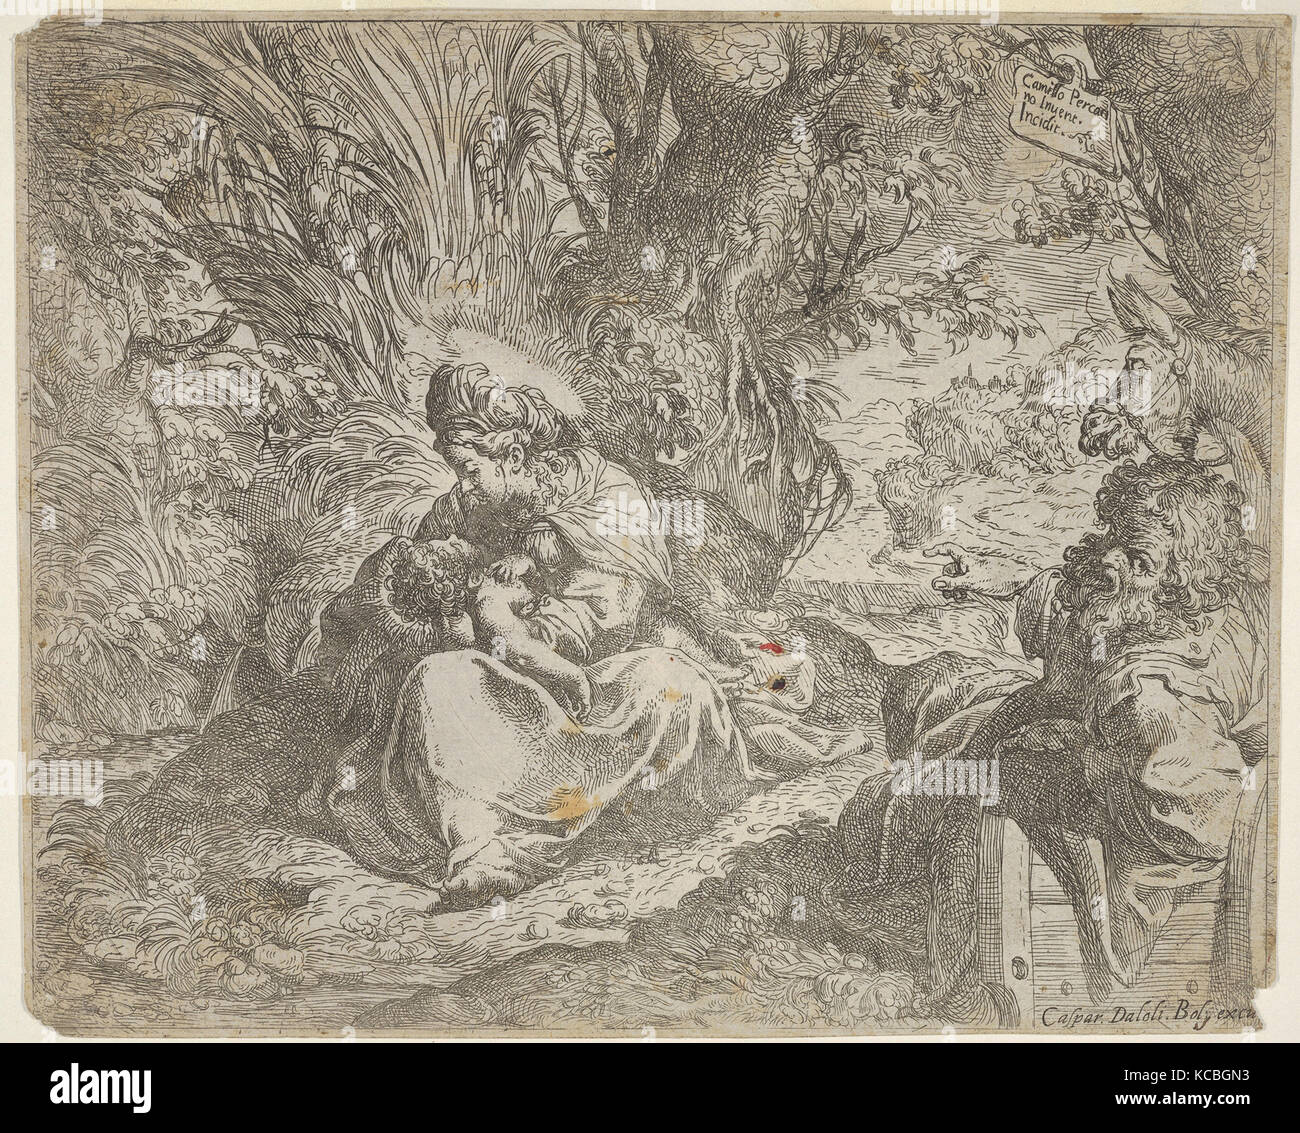 Resto sulla fuga in Egitto, la Vergine seduto sull'erba in un boschetto con il Cristo Bambino in grembo a destra Giuseppe reclinabile Foto Stock